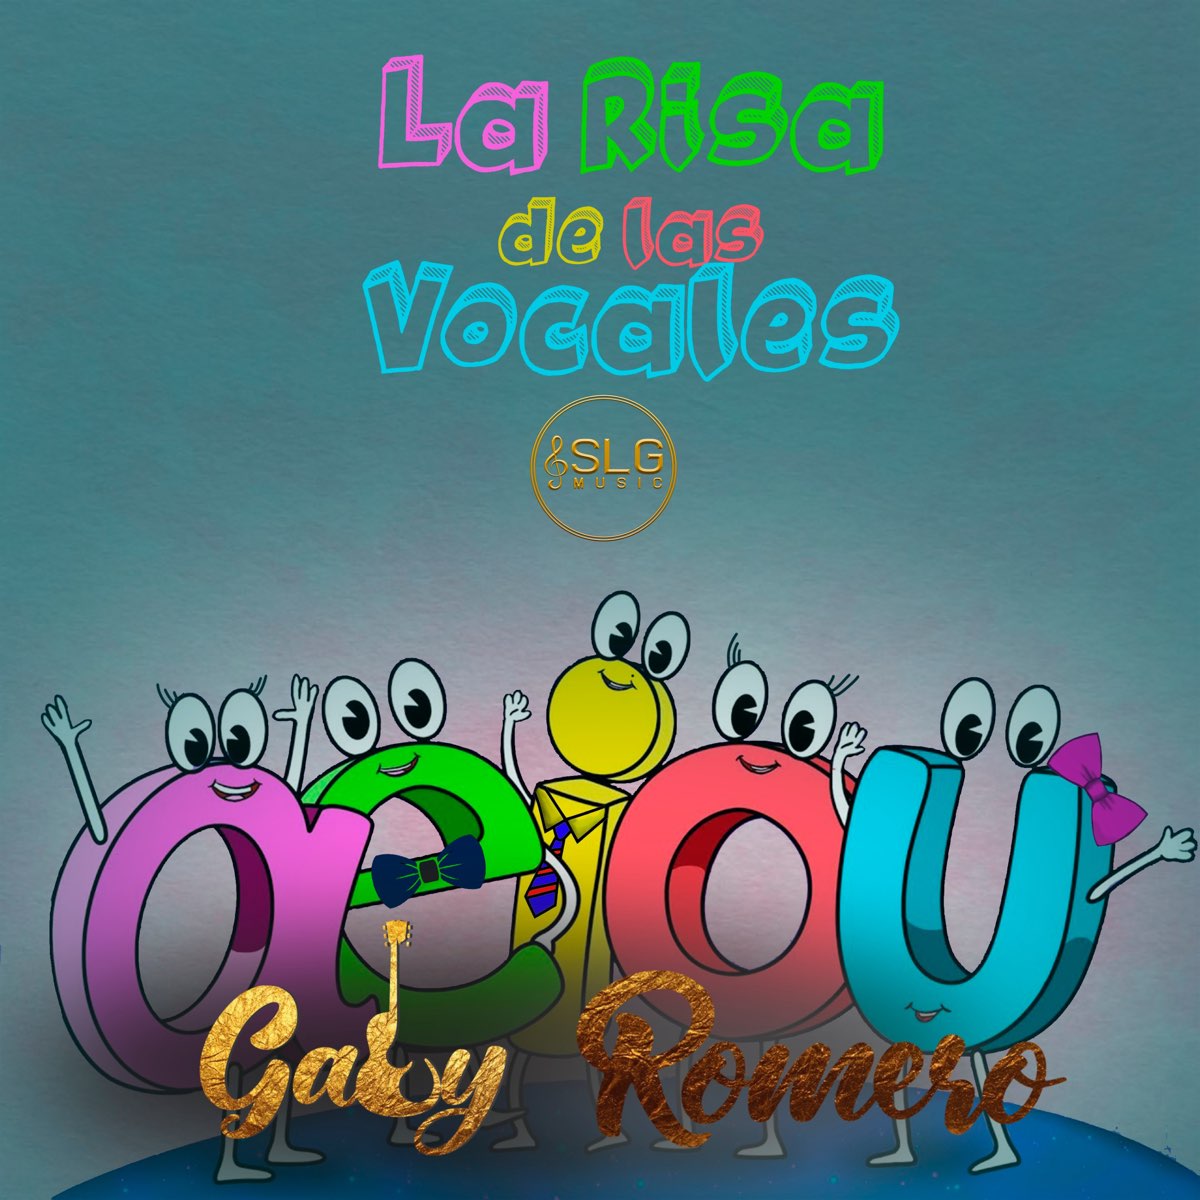 La Risa de las Vocales - Single de Gaby Romero en Apple Music